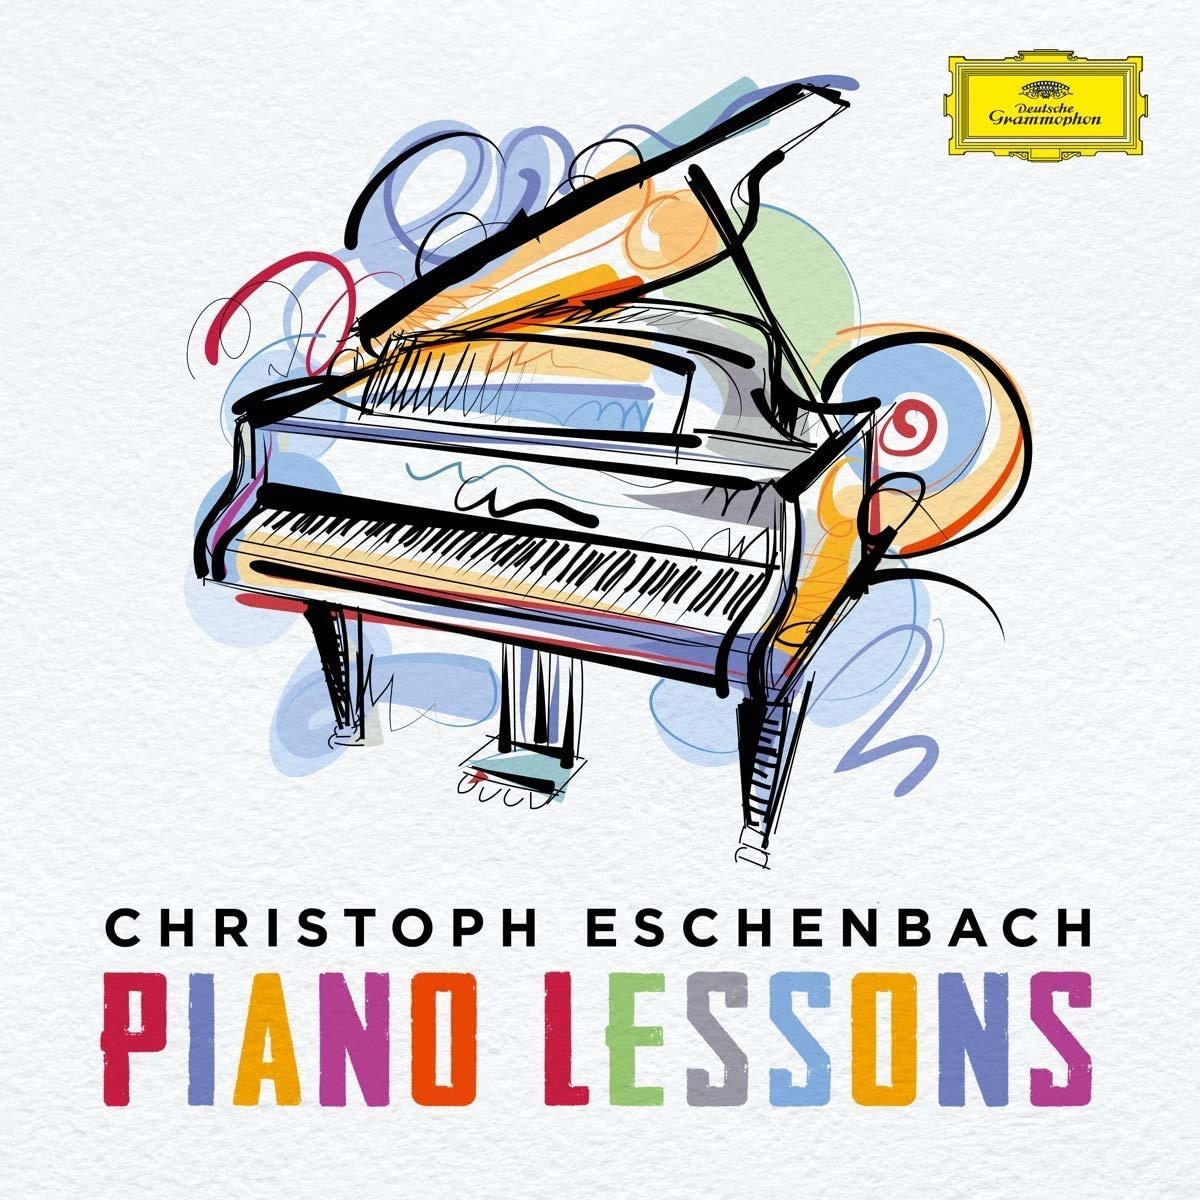 Audio Cd Christoph Eschenbach: Piano Lessons (16 Cd) NUOVO SIGILLATO, EDIZIONE DEL 29/01/2021 SUBITO DISPONIBILE